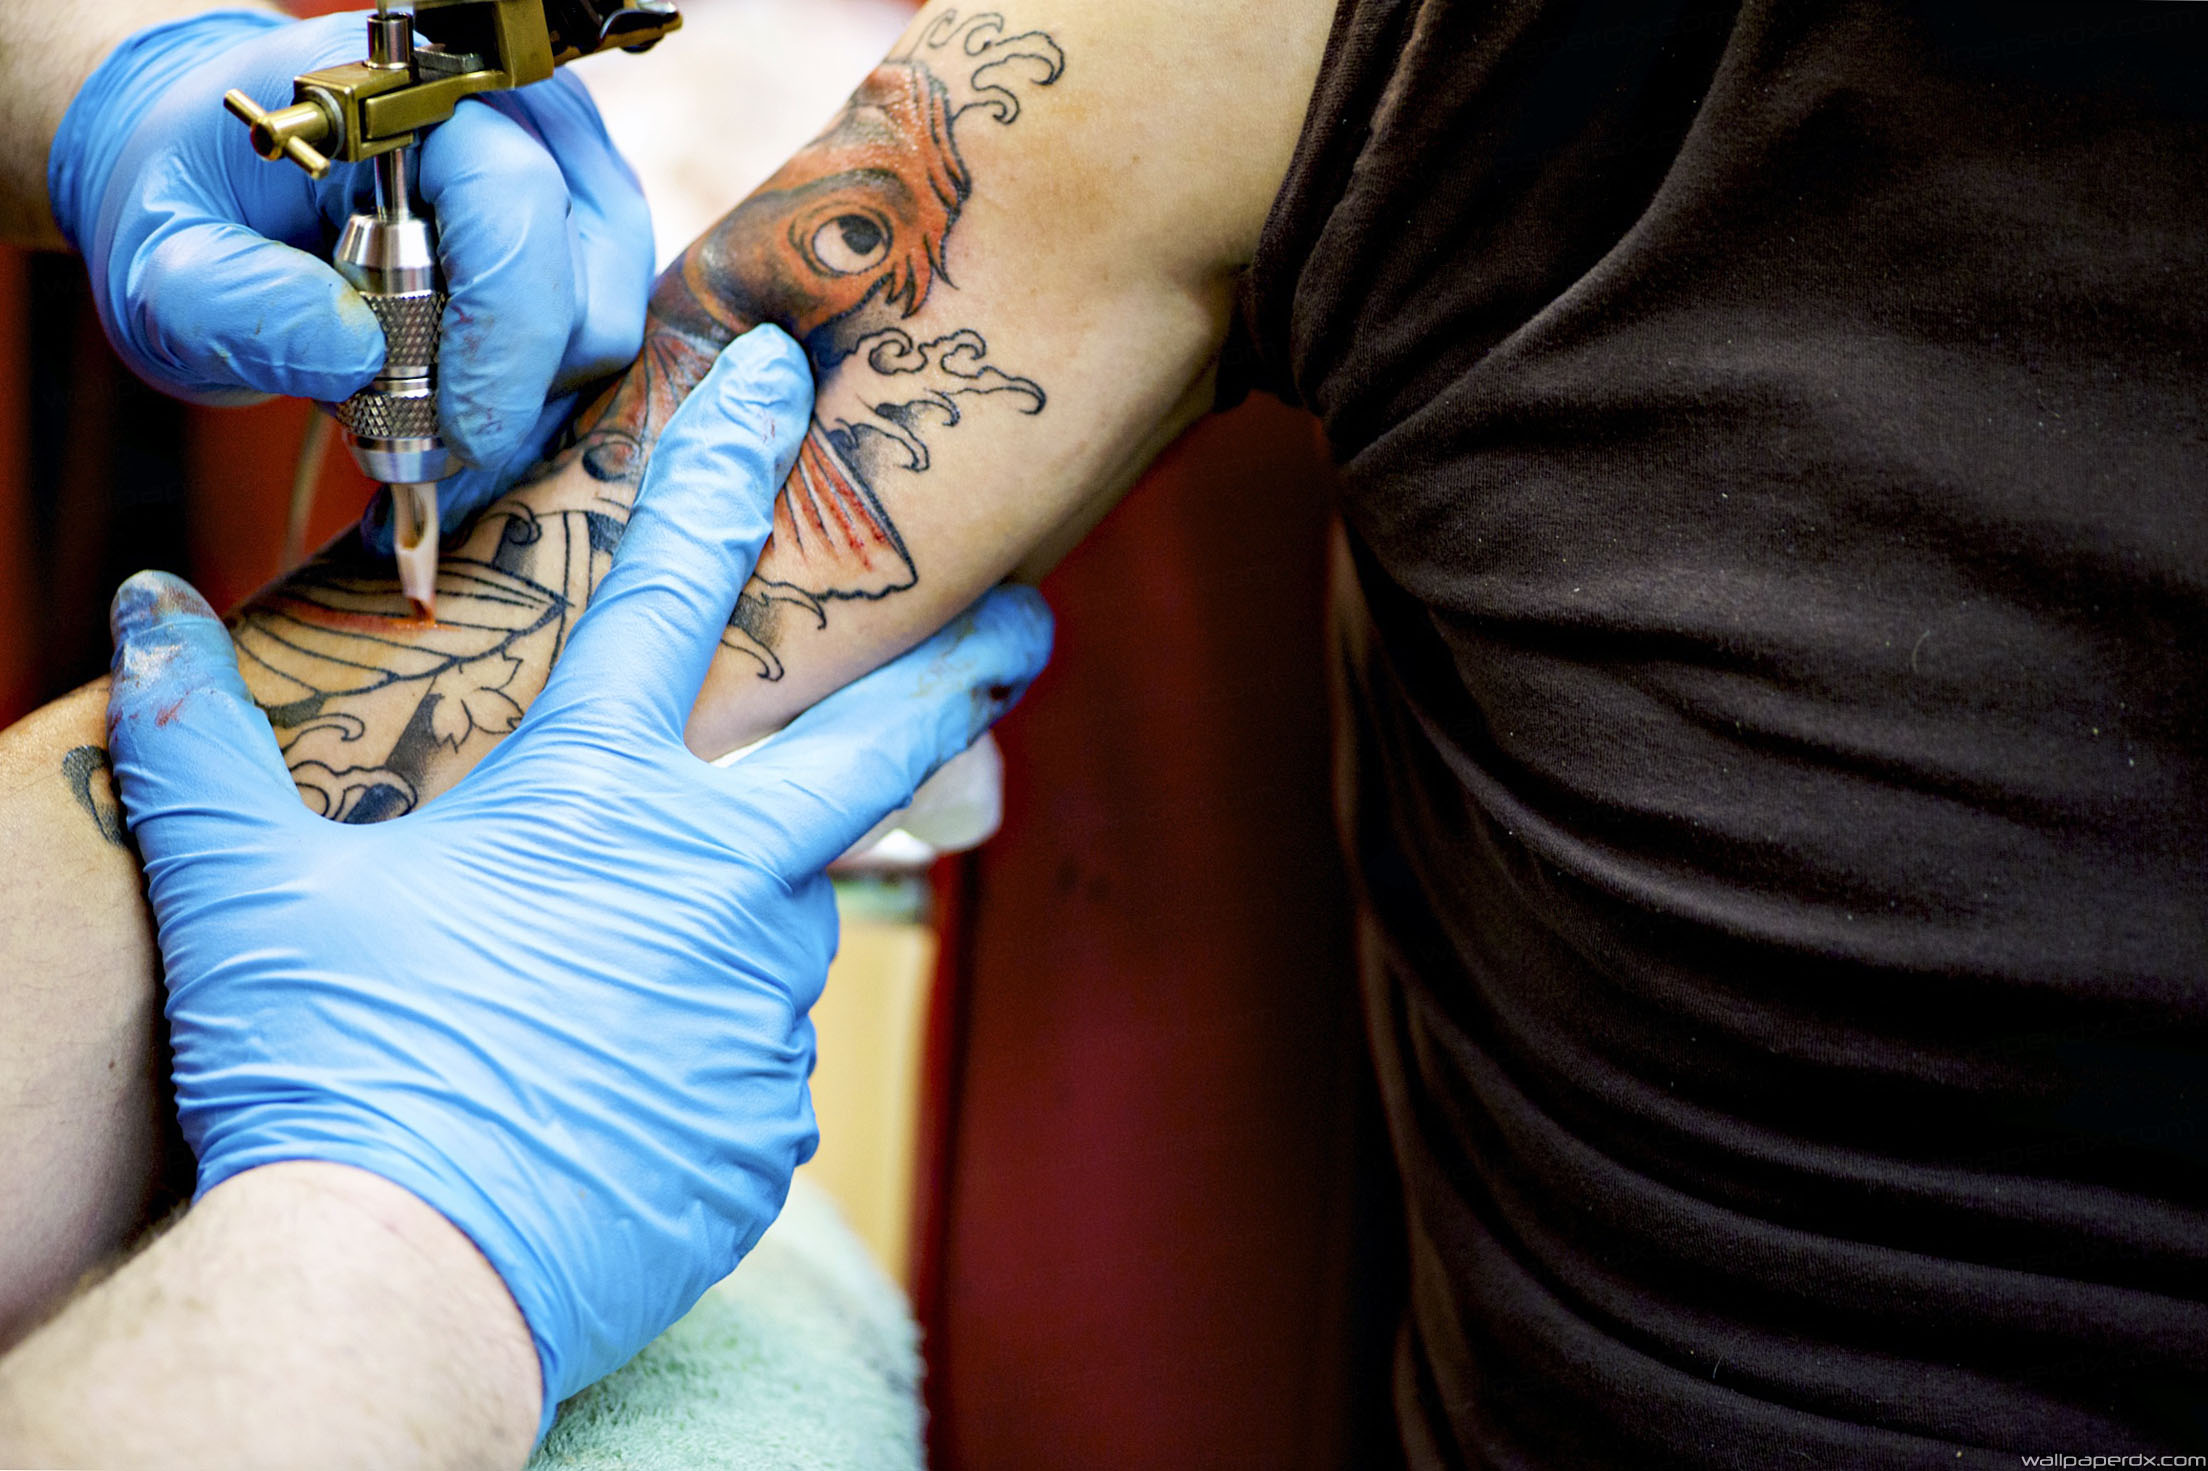 Pielęgnacja tatuażu. Jak dbać o tatuaż po zabiegu?